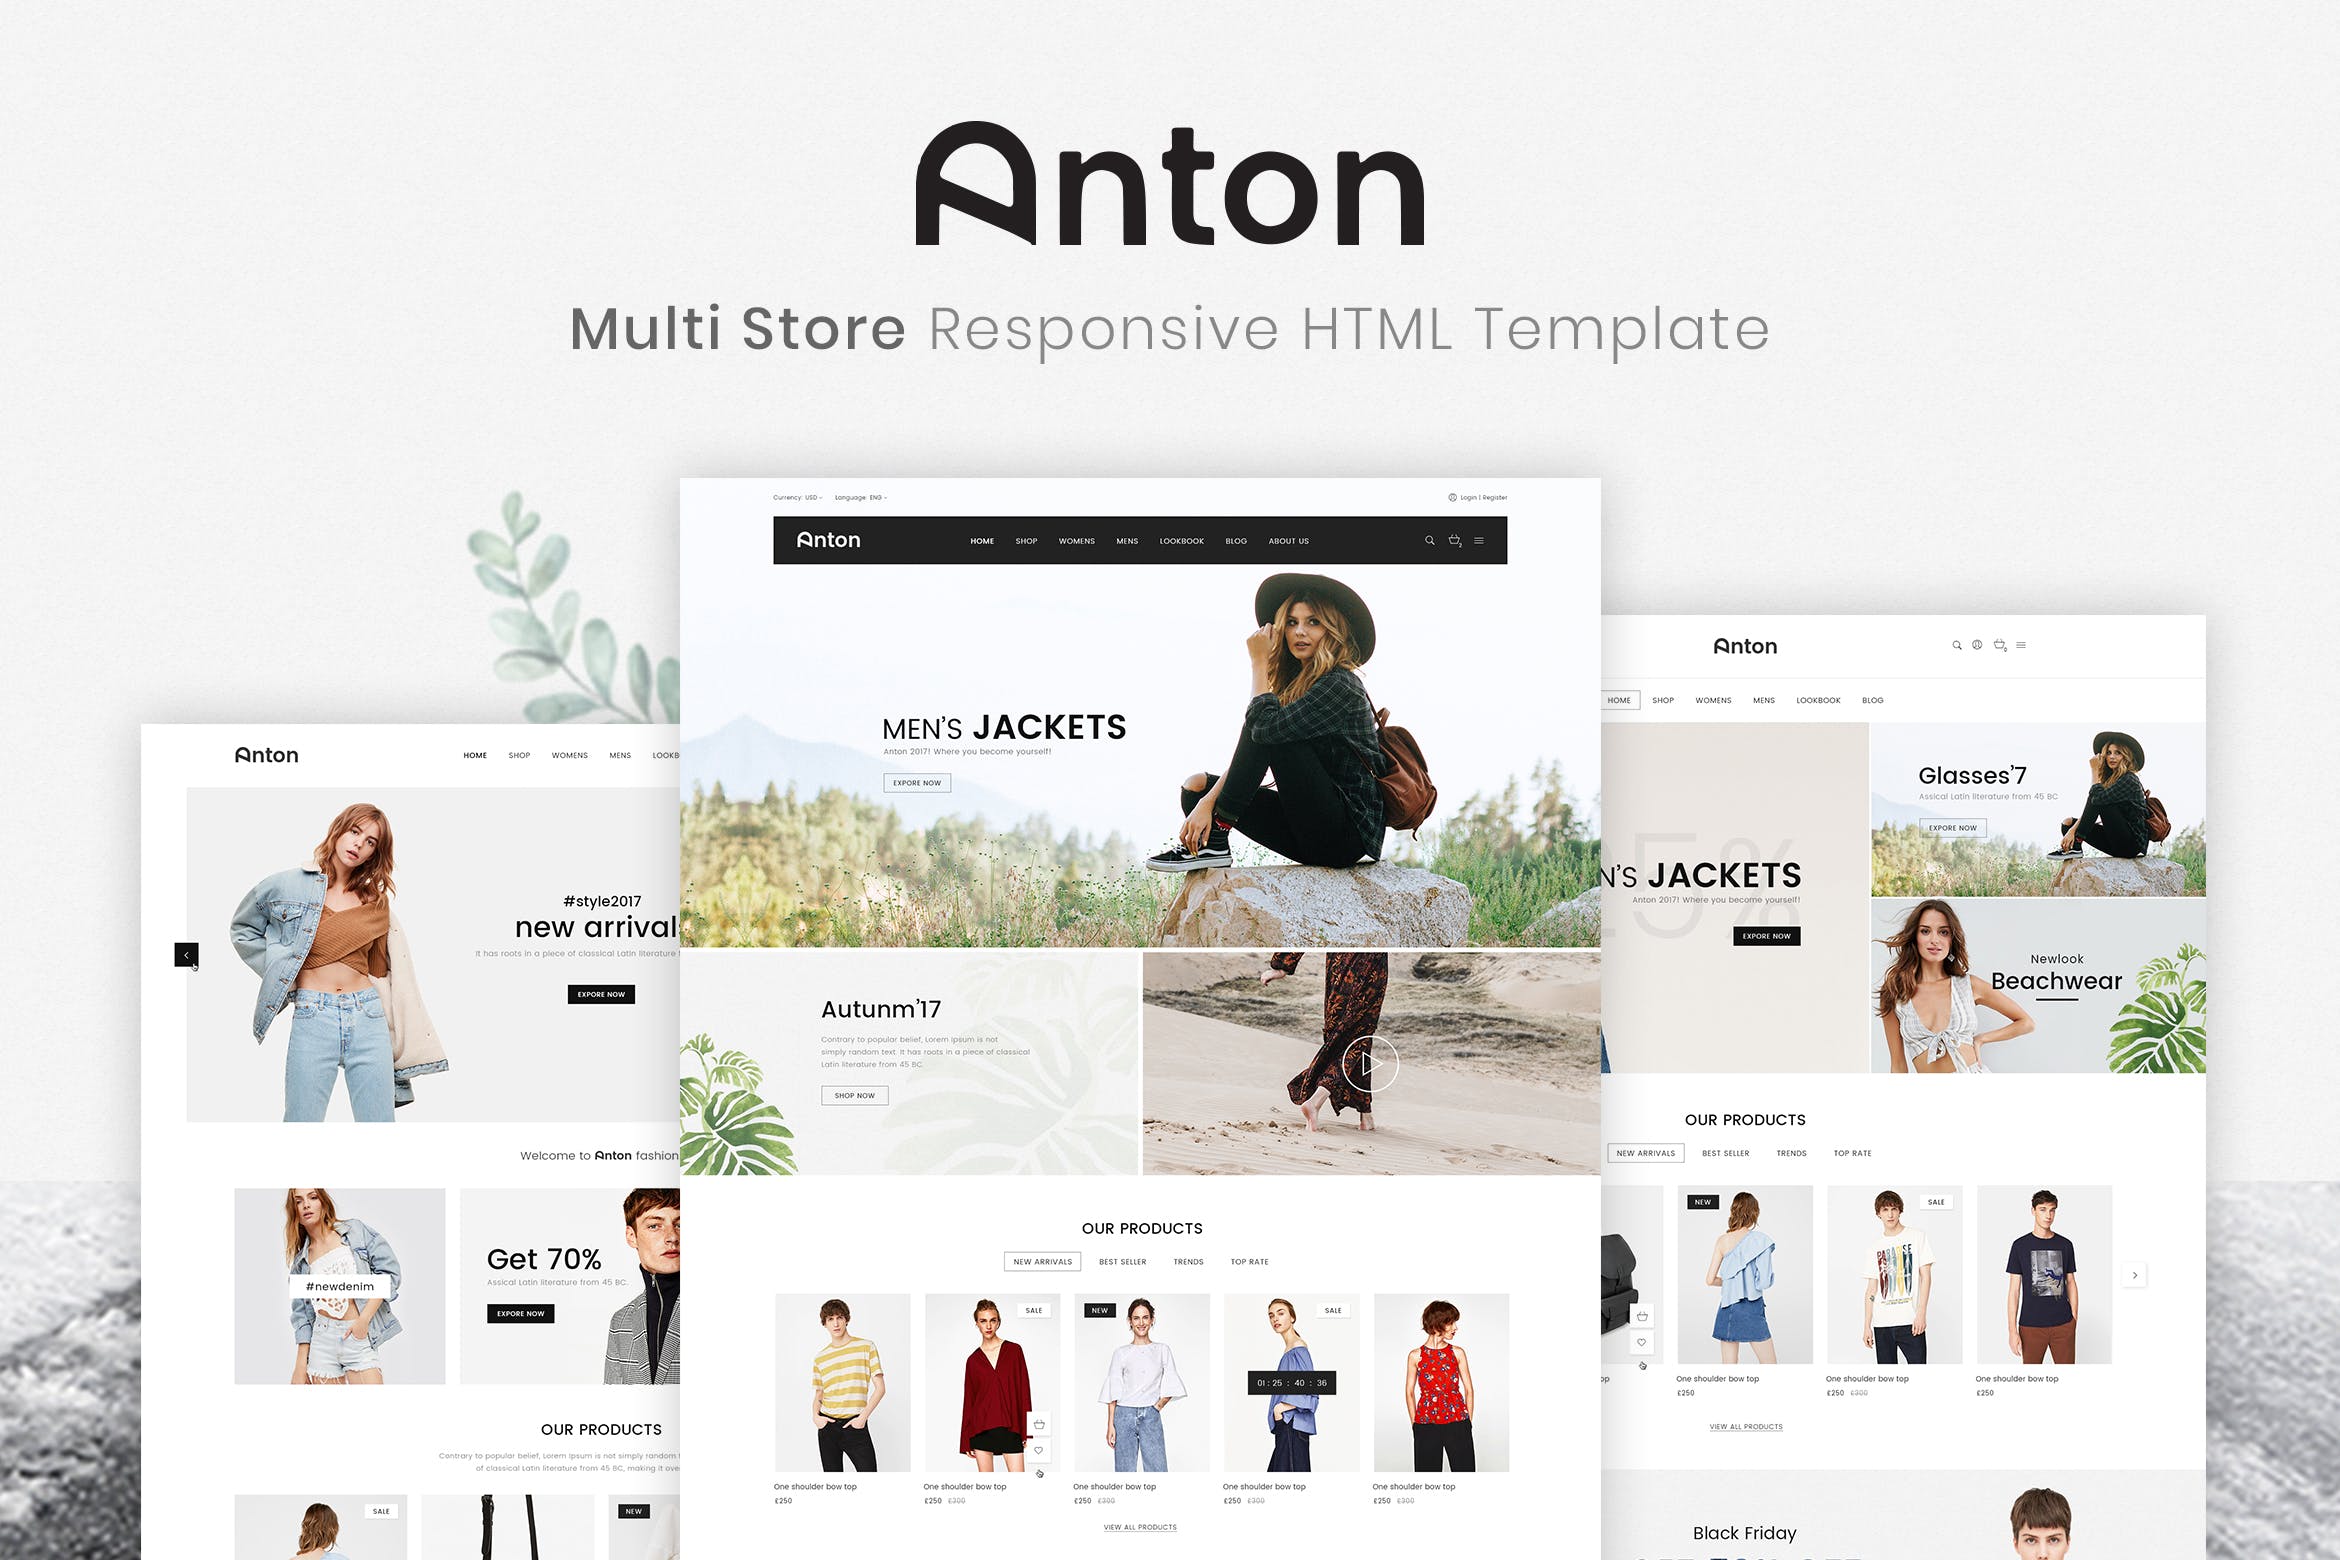 响应式时尚服饰网上商城HTML模板第一素材精选素材 Anton | Multi Store Responsive HTML Template插图